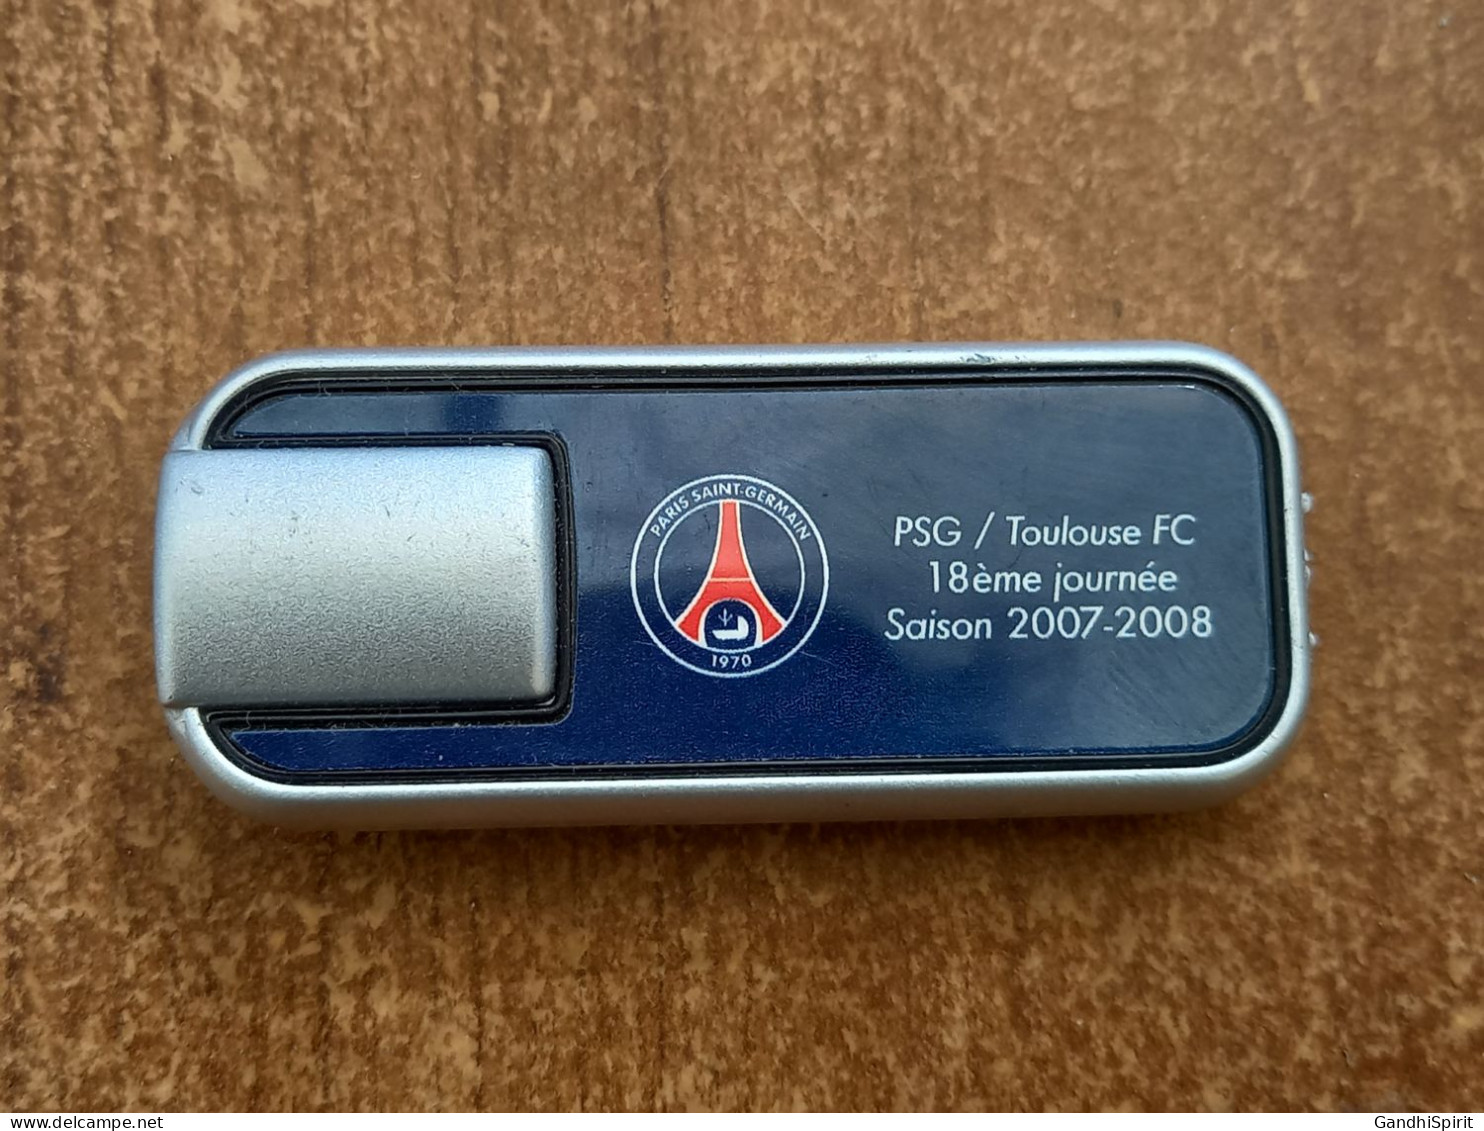 PSG Paris Saint Germain / Toulouse FC 2007-2008 Laser Ou Petite Lampe De Poche - Apparel, Souvenirs & Other